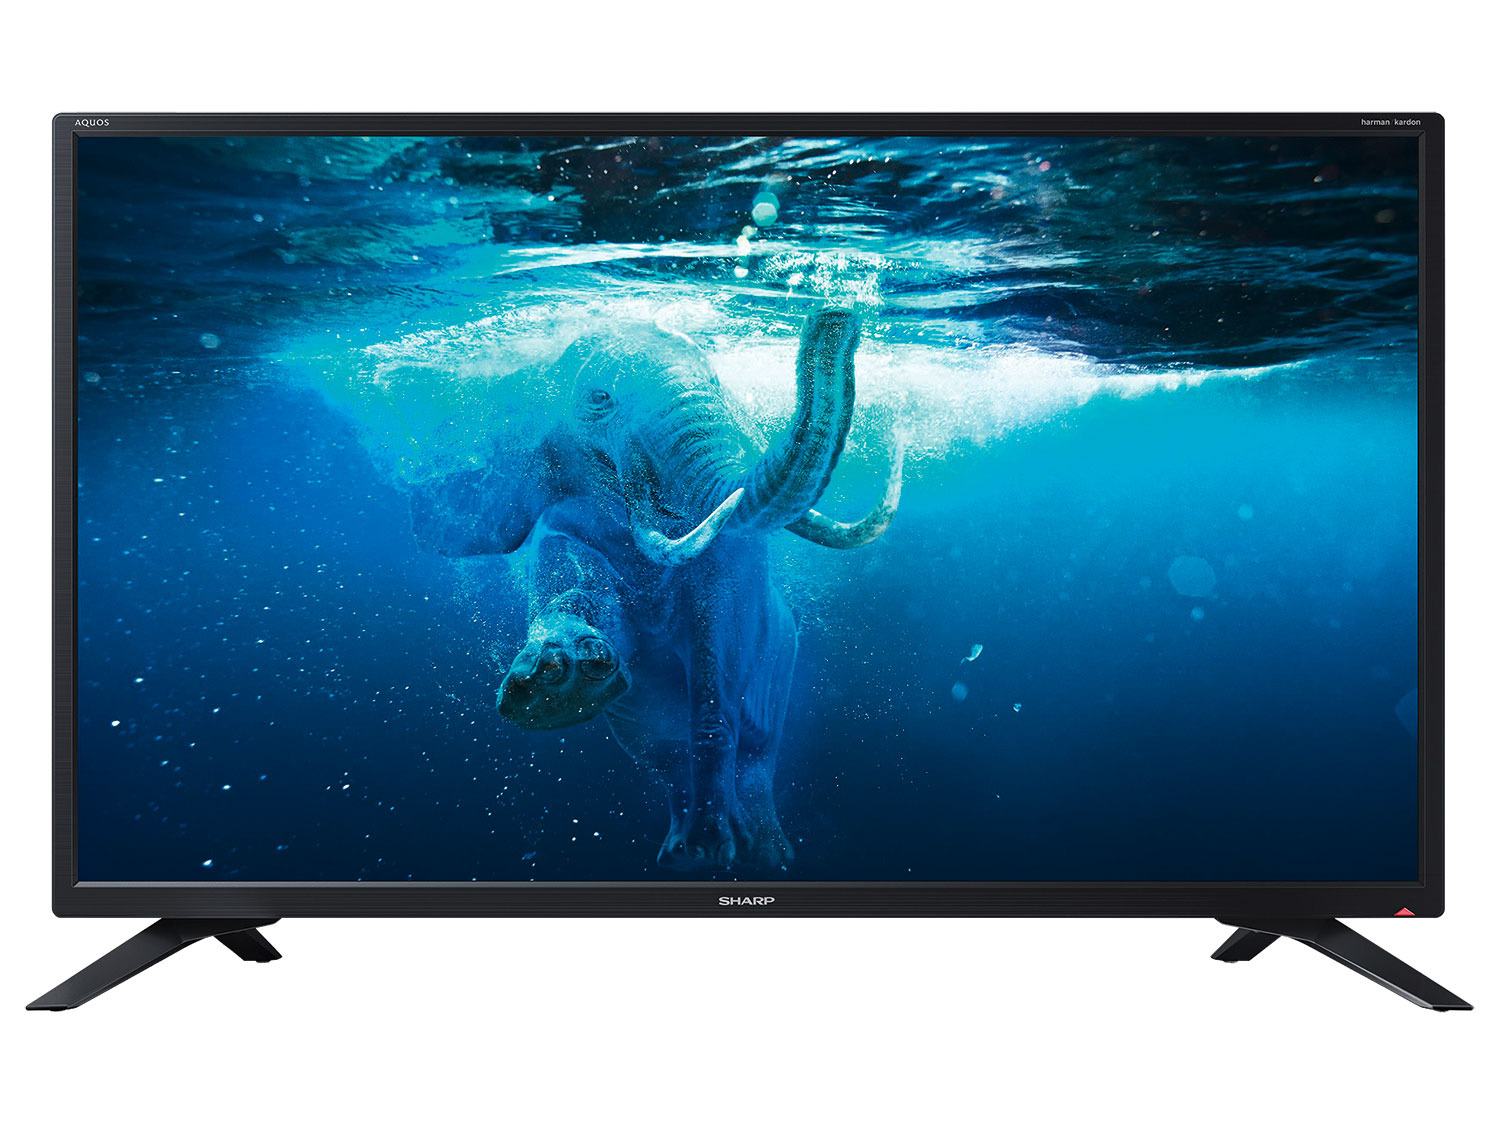 Hesje overtuigen Rubriek Sharp 32" HD Ready Smart TV 32BC2E online kopen | LIDL